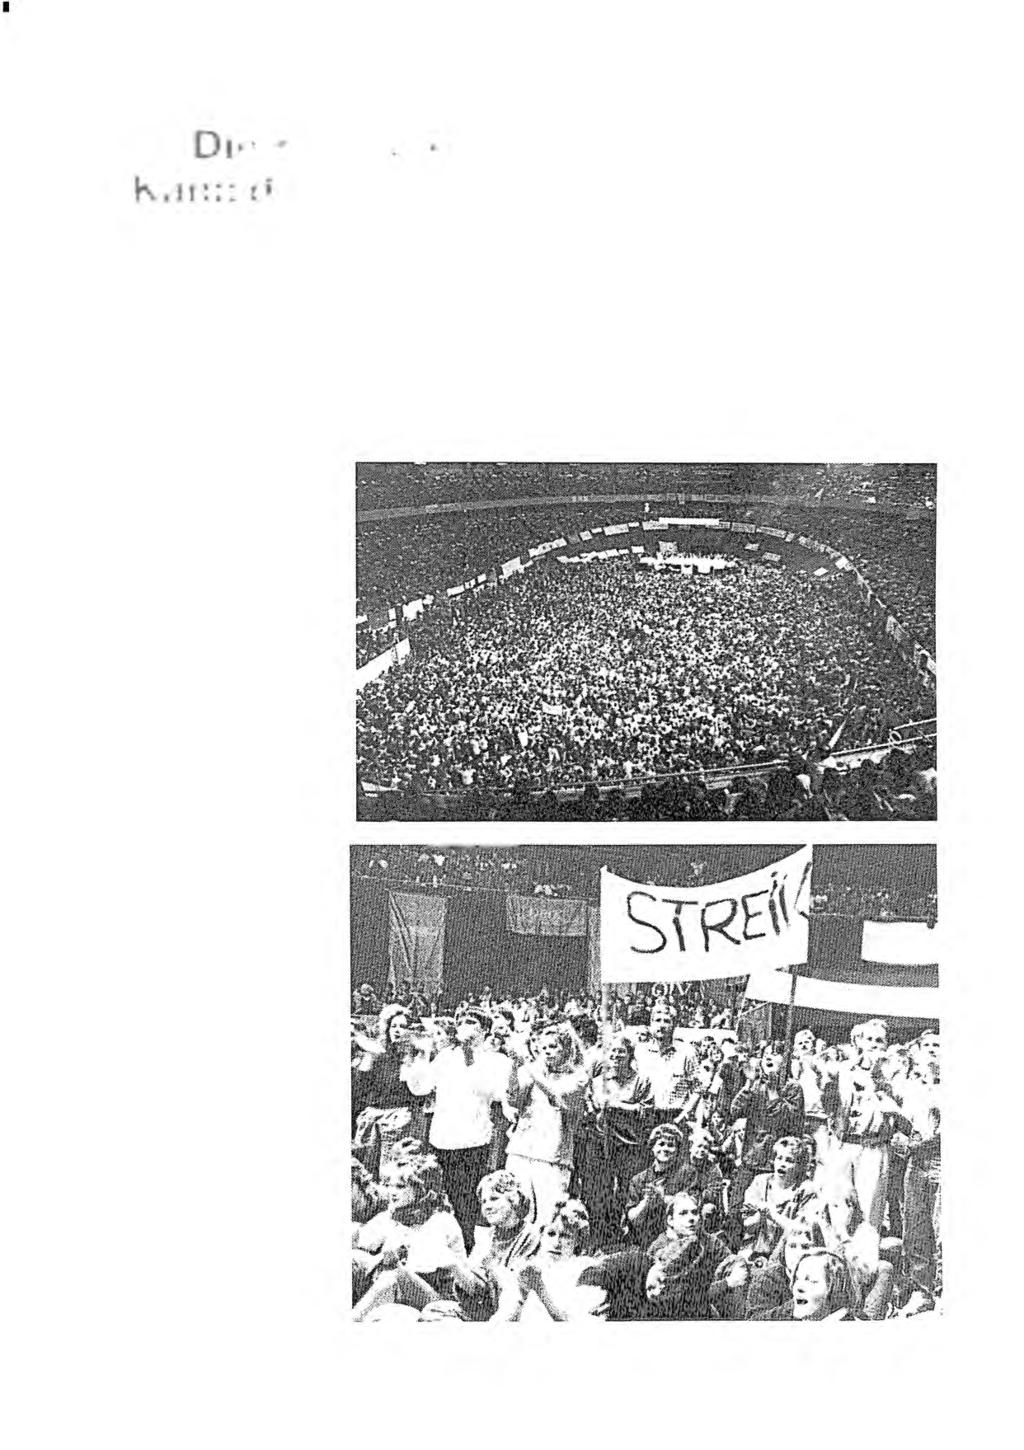 Politische Berichte 8/89 Aktuelles aus Politik und Wirtschaft Seite 5 Pflegepersonal Döe Kampfbereitschaft wächst Kann der Streik organisiert werden?